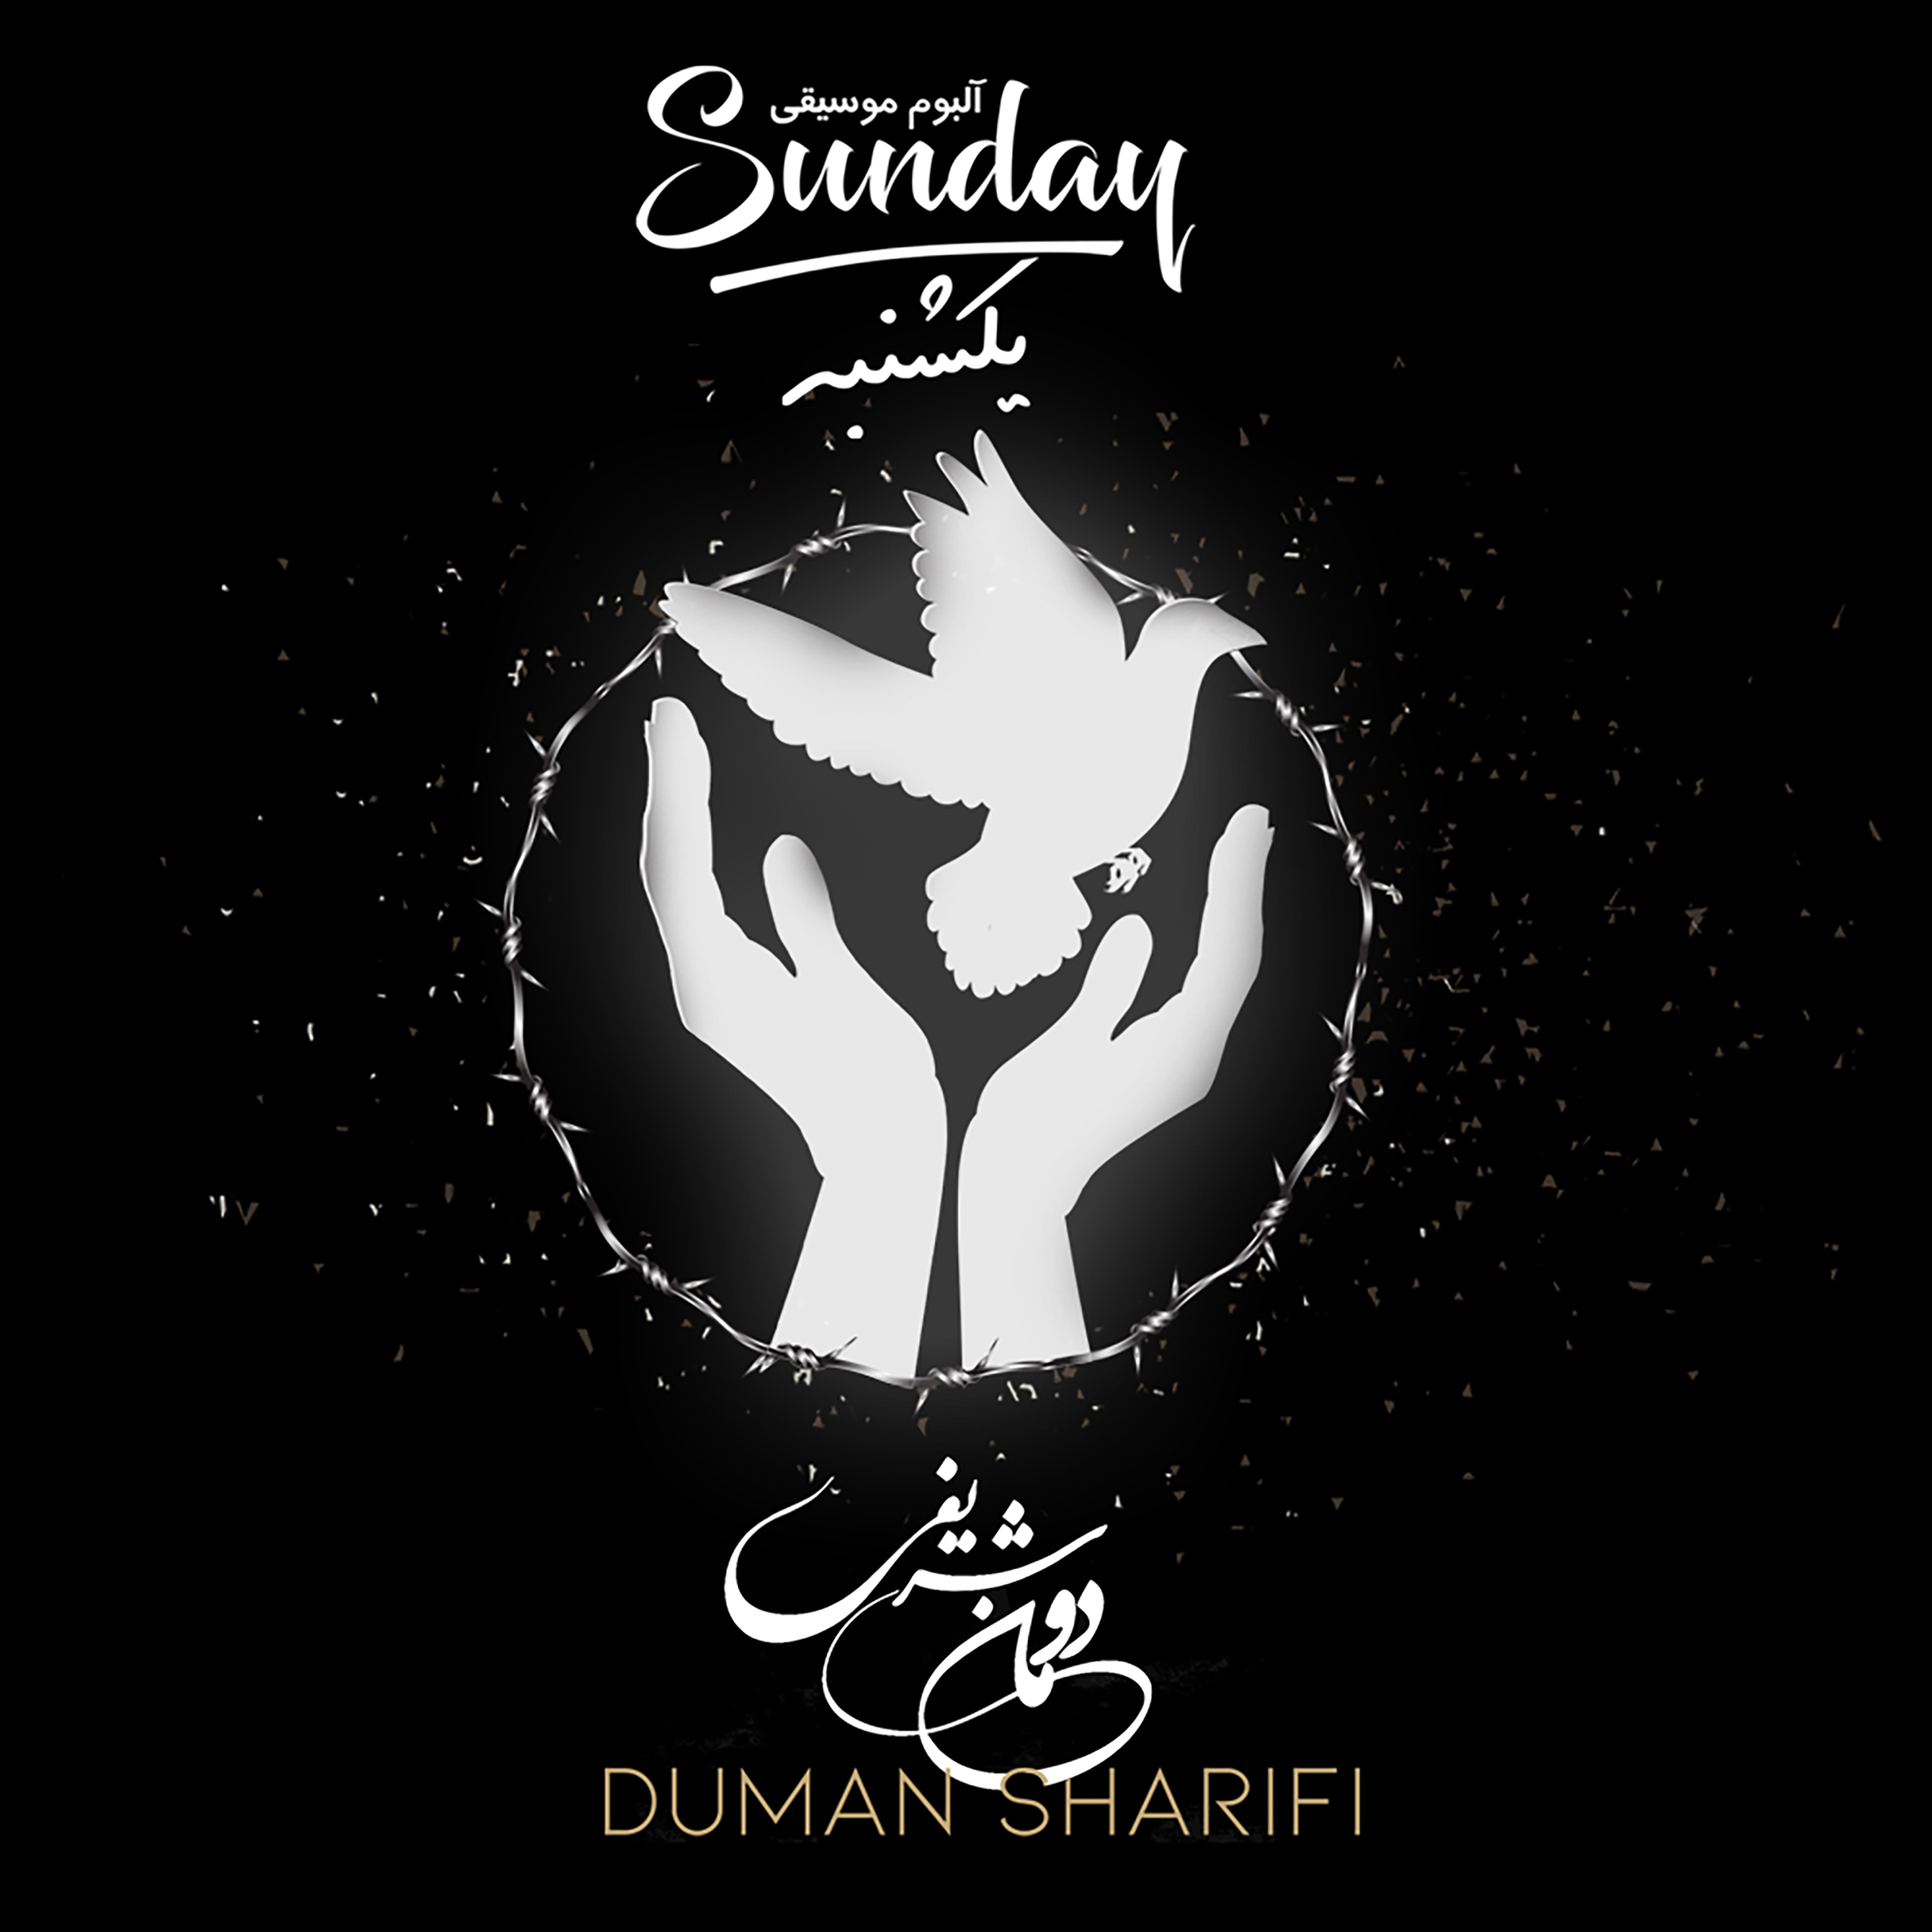  دانلود آهنگ جدید دومان شریفی - مادرخوانده | Download New Music By Duman Sharifi - Stepmother